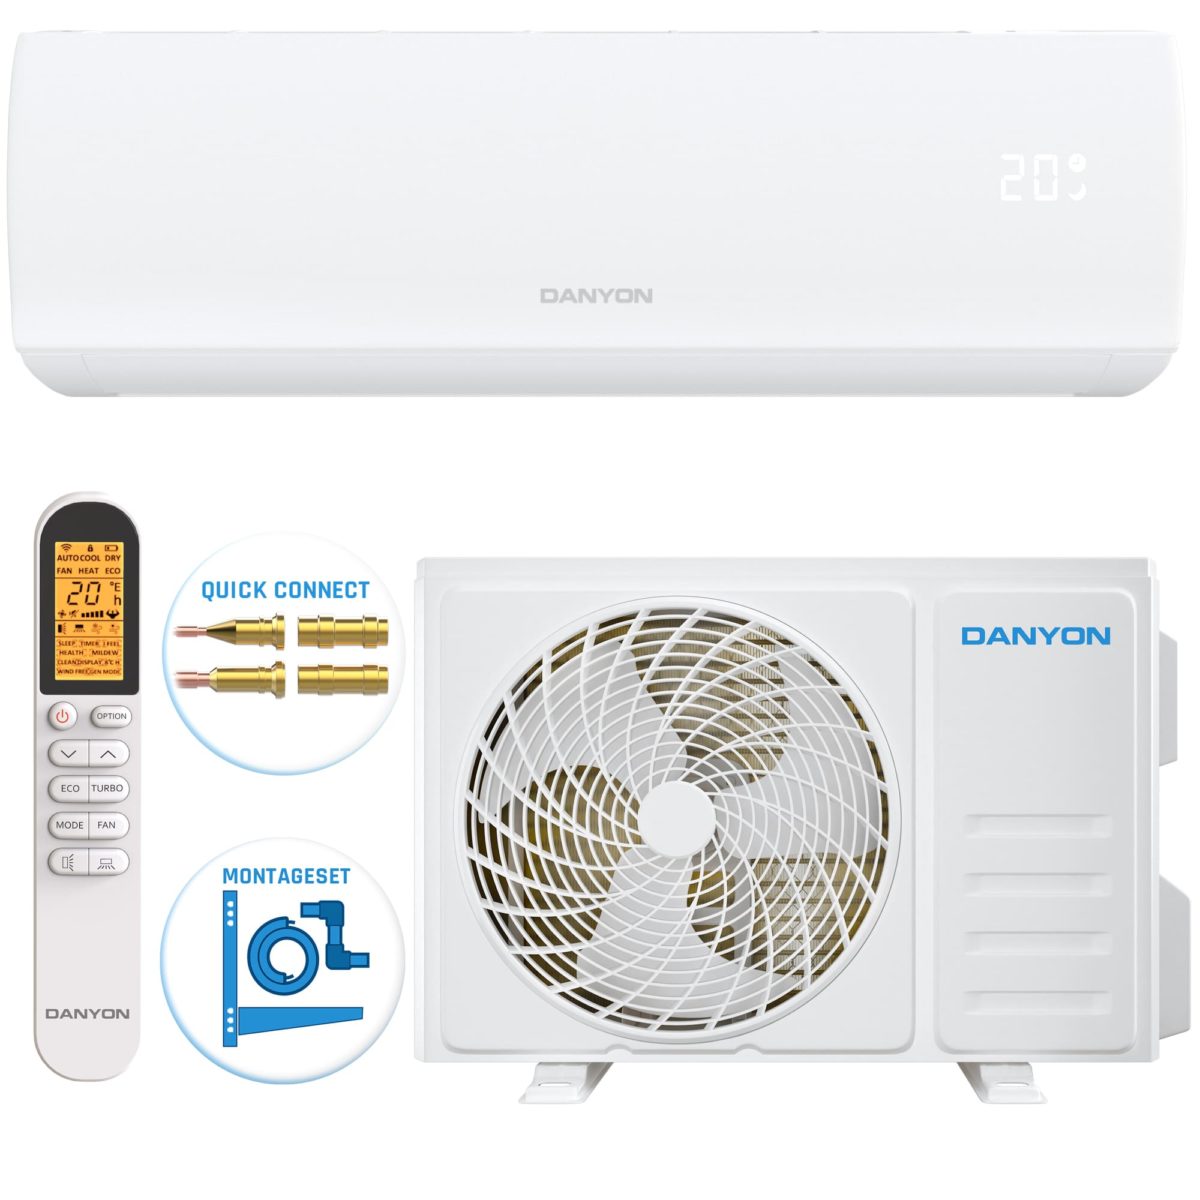 Produktbild Quick Connect Split Klimaanlage mit Fernbedienung